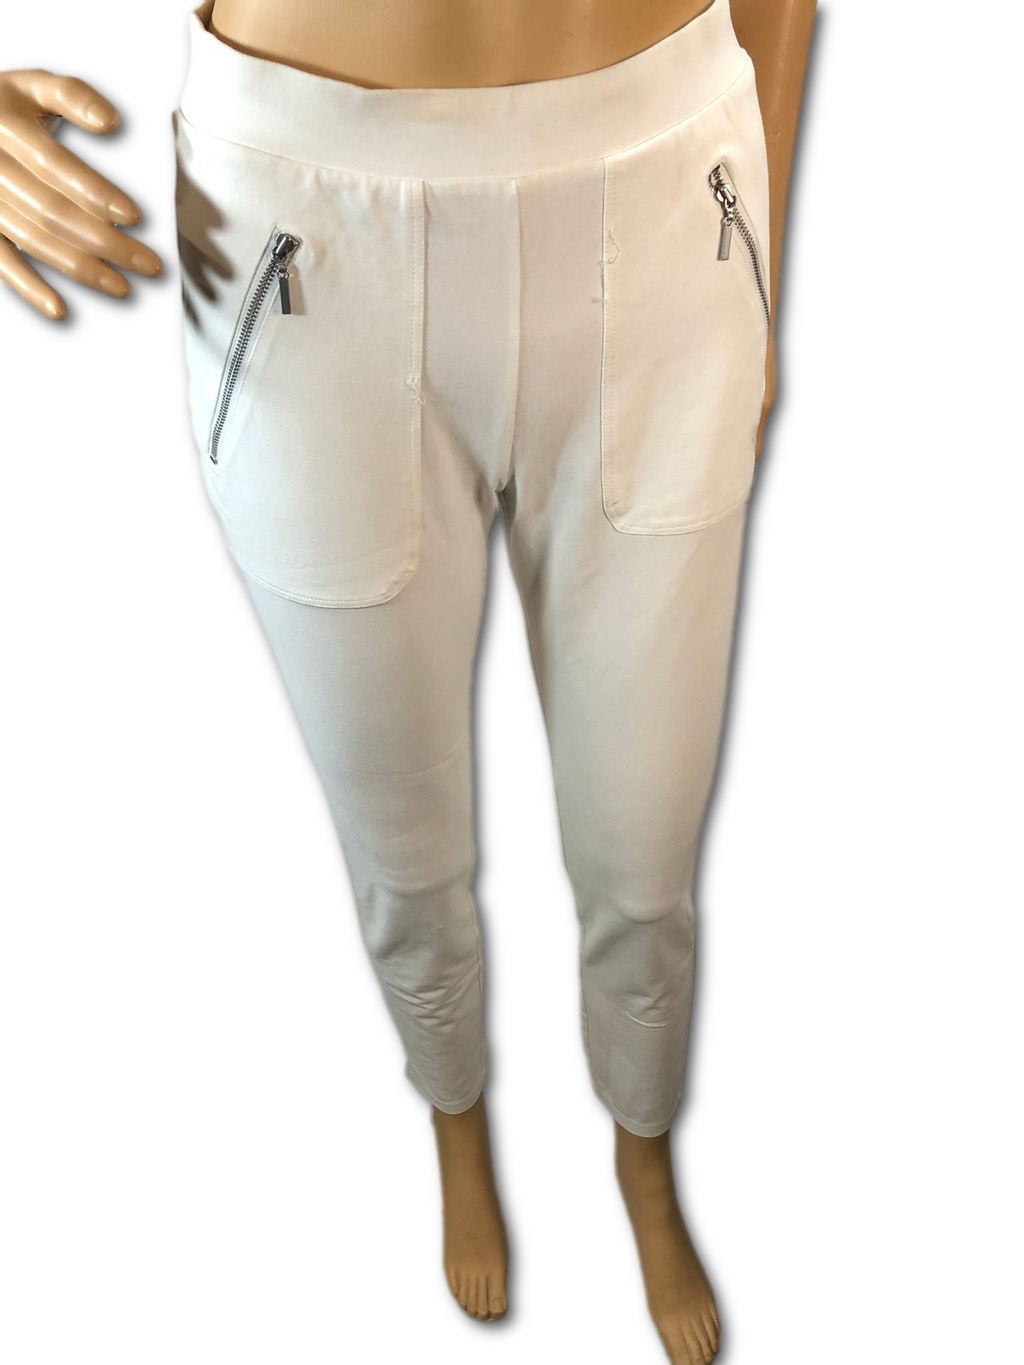 White Slim-Leg Stretch Pants with Zipper Pockets - XXS